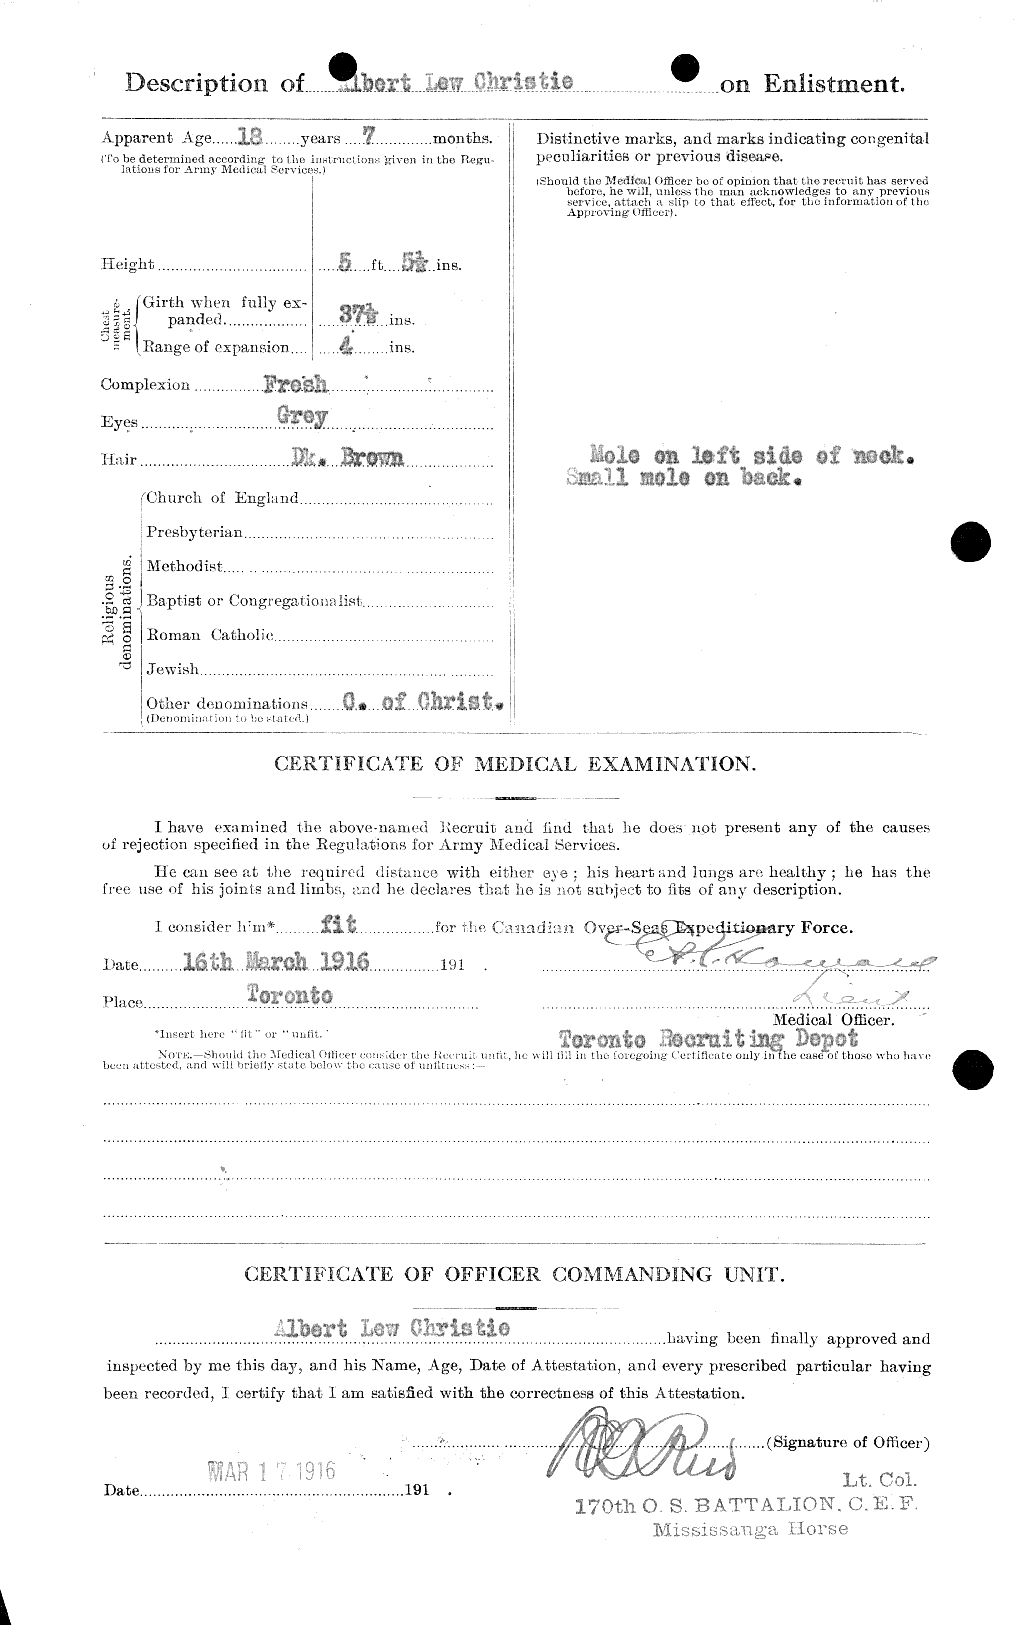 Dossiers du Personnel de la Première Guerre mondiale - CEC 021855b